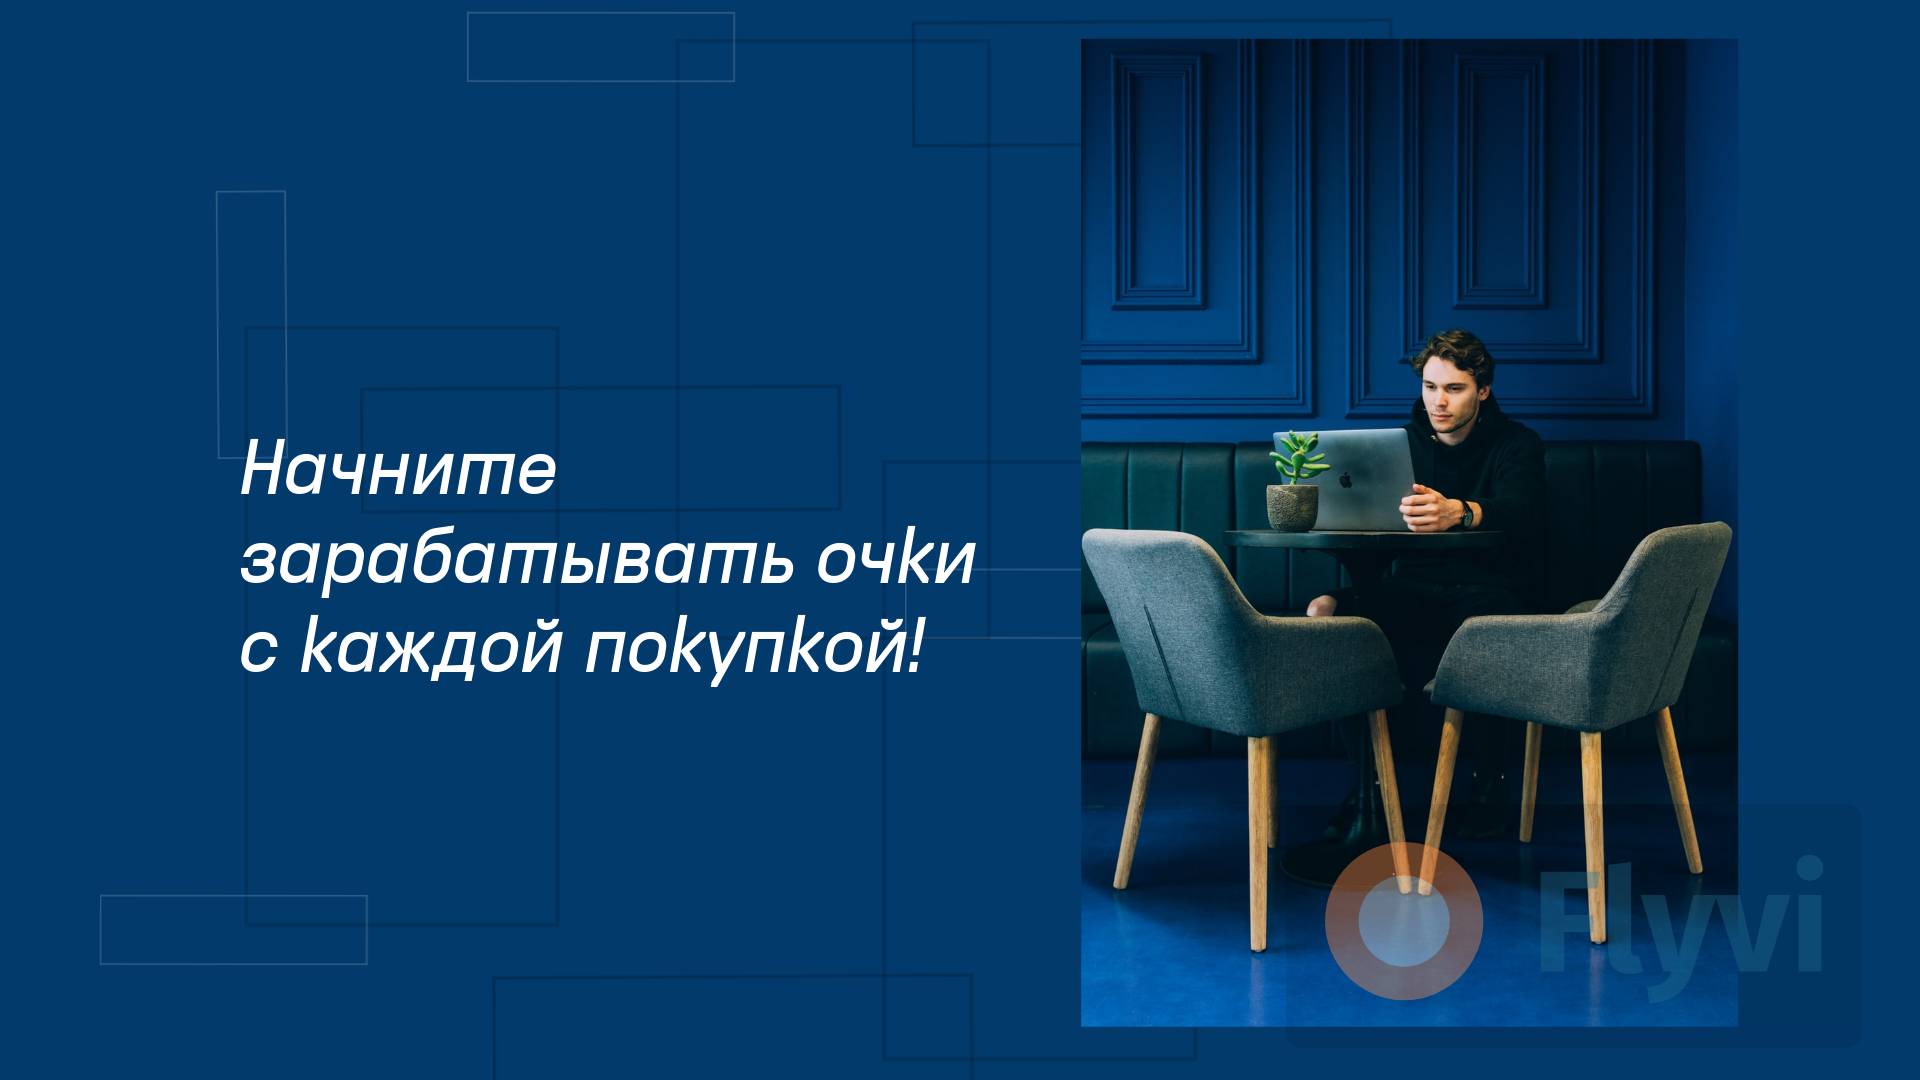 Ультрамариновый темно-синий пост с готовым слоганом для бизнес публикаций в соцсетях